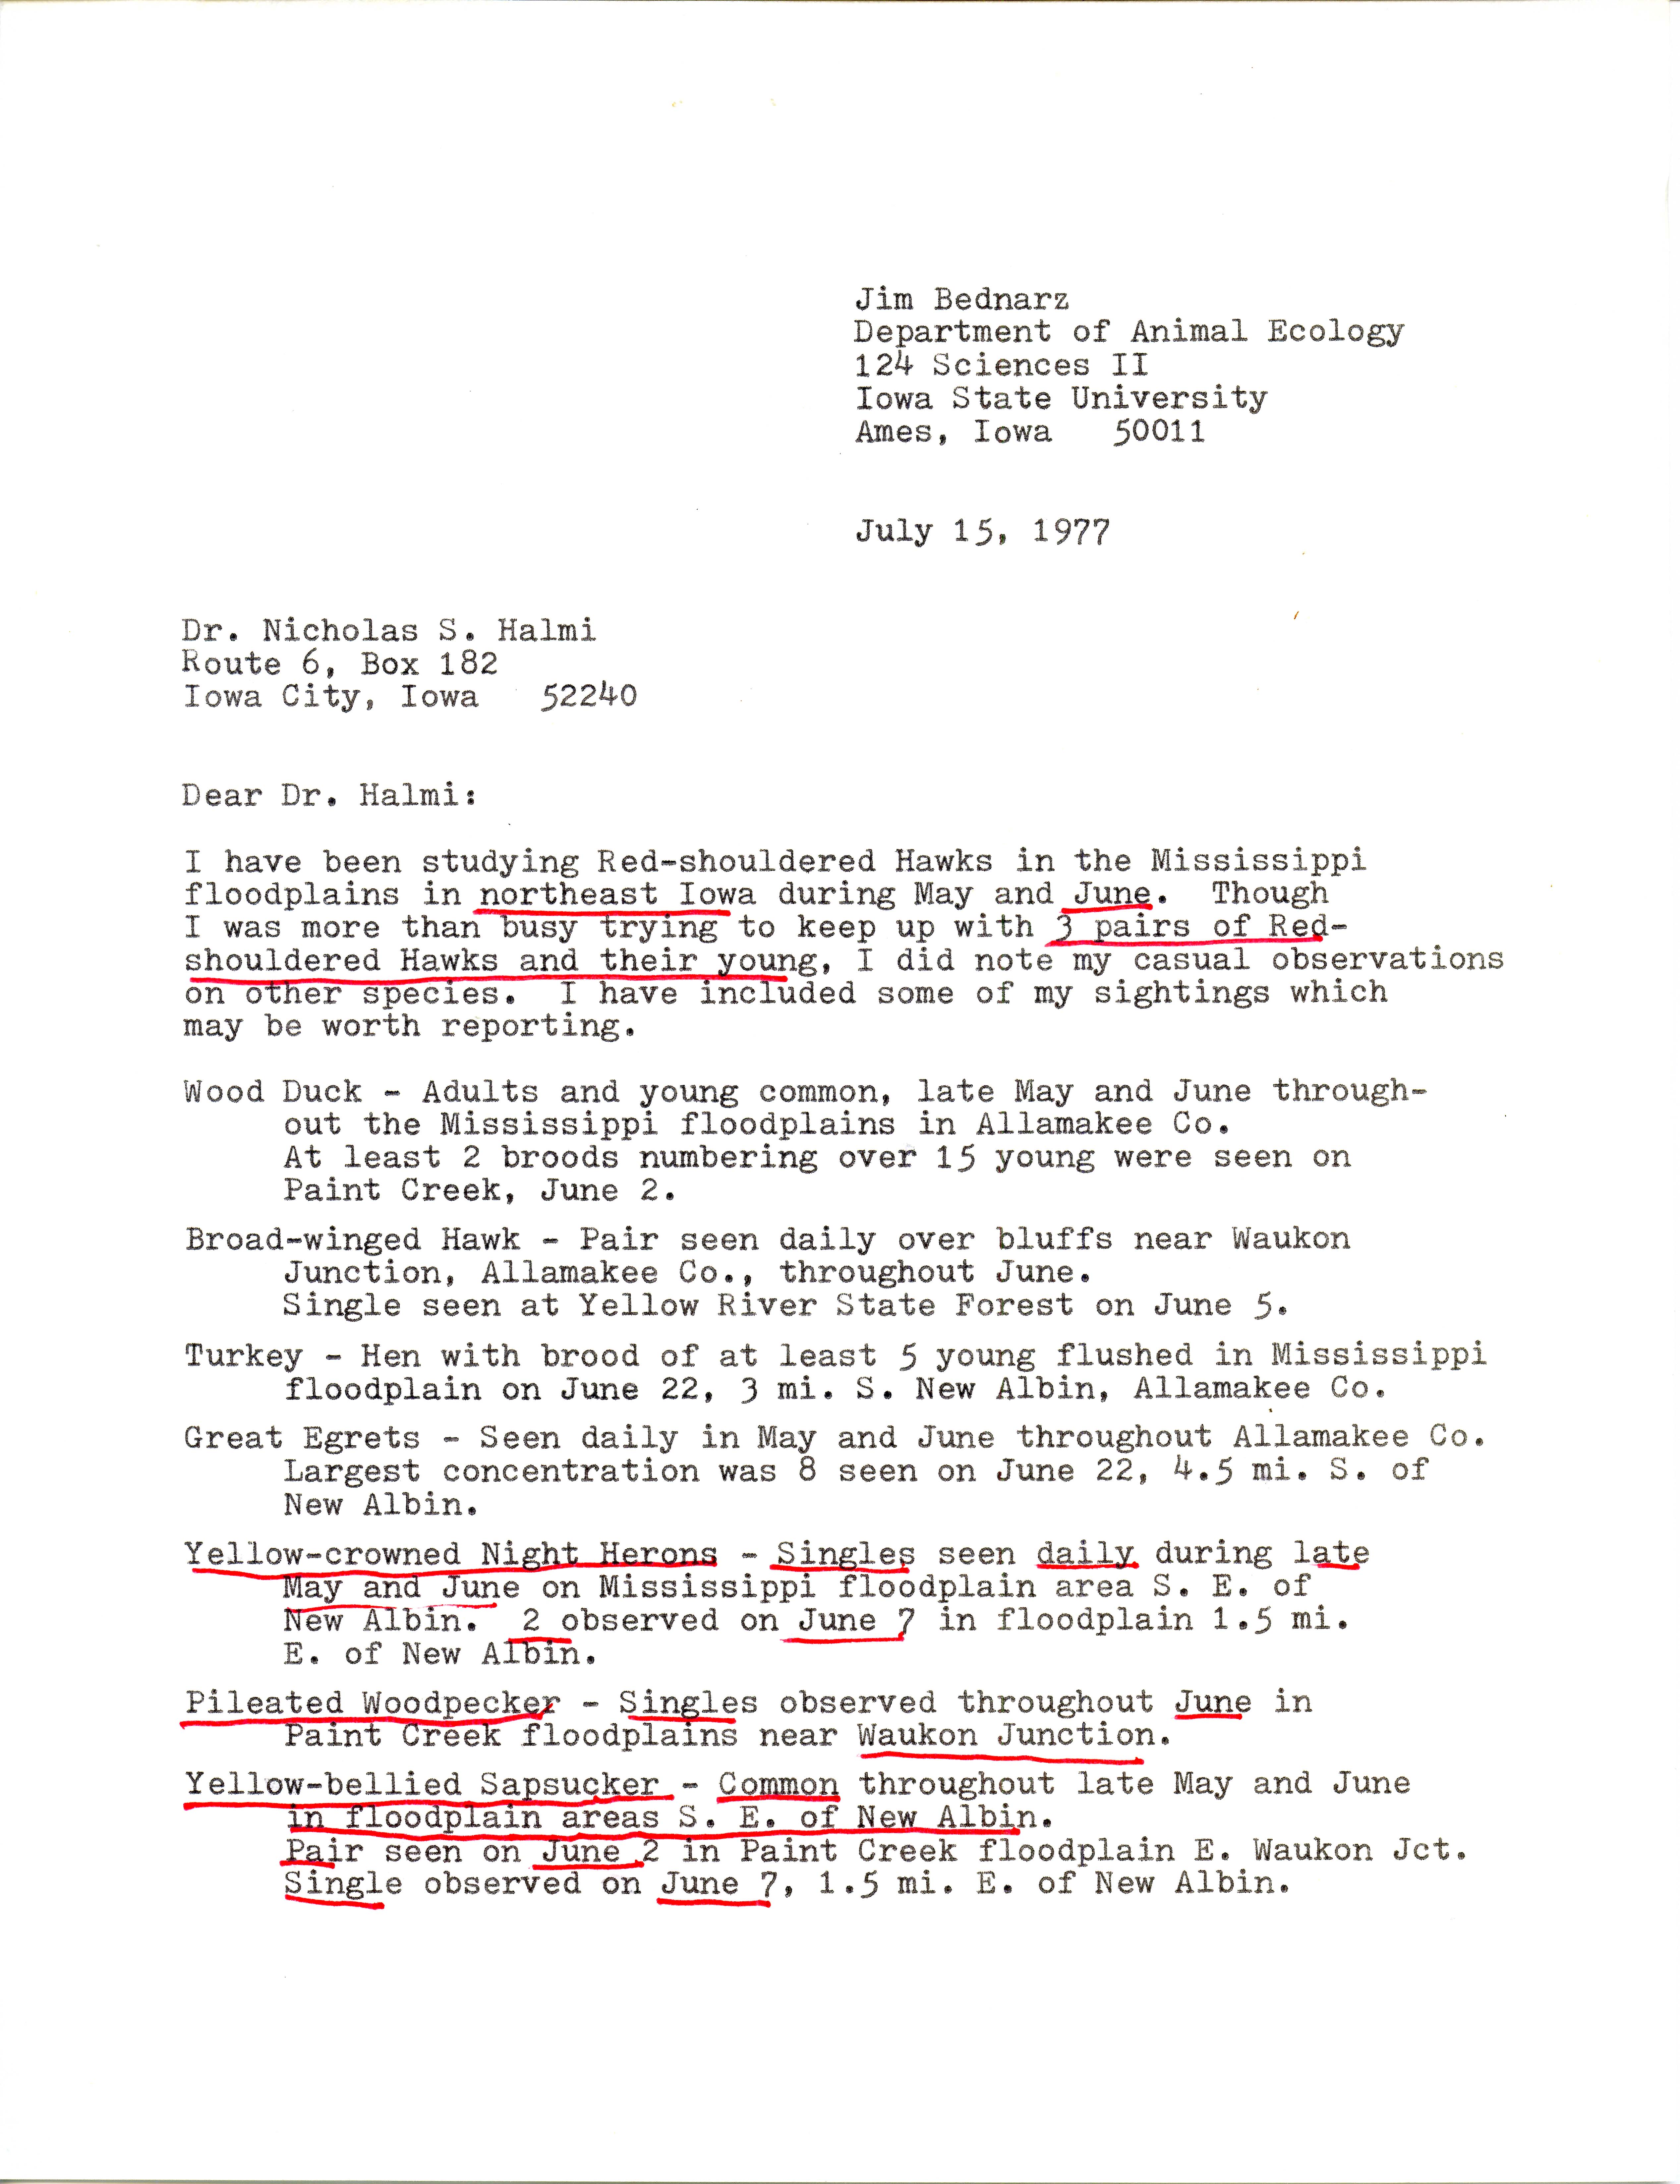 James C. Bednarz letter to Nicholas S. Halmi, regarding bird sightings, July 15, 1977